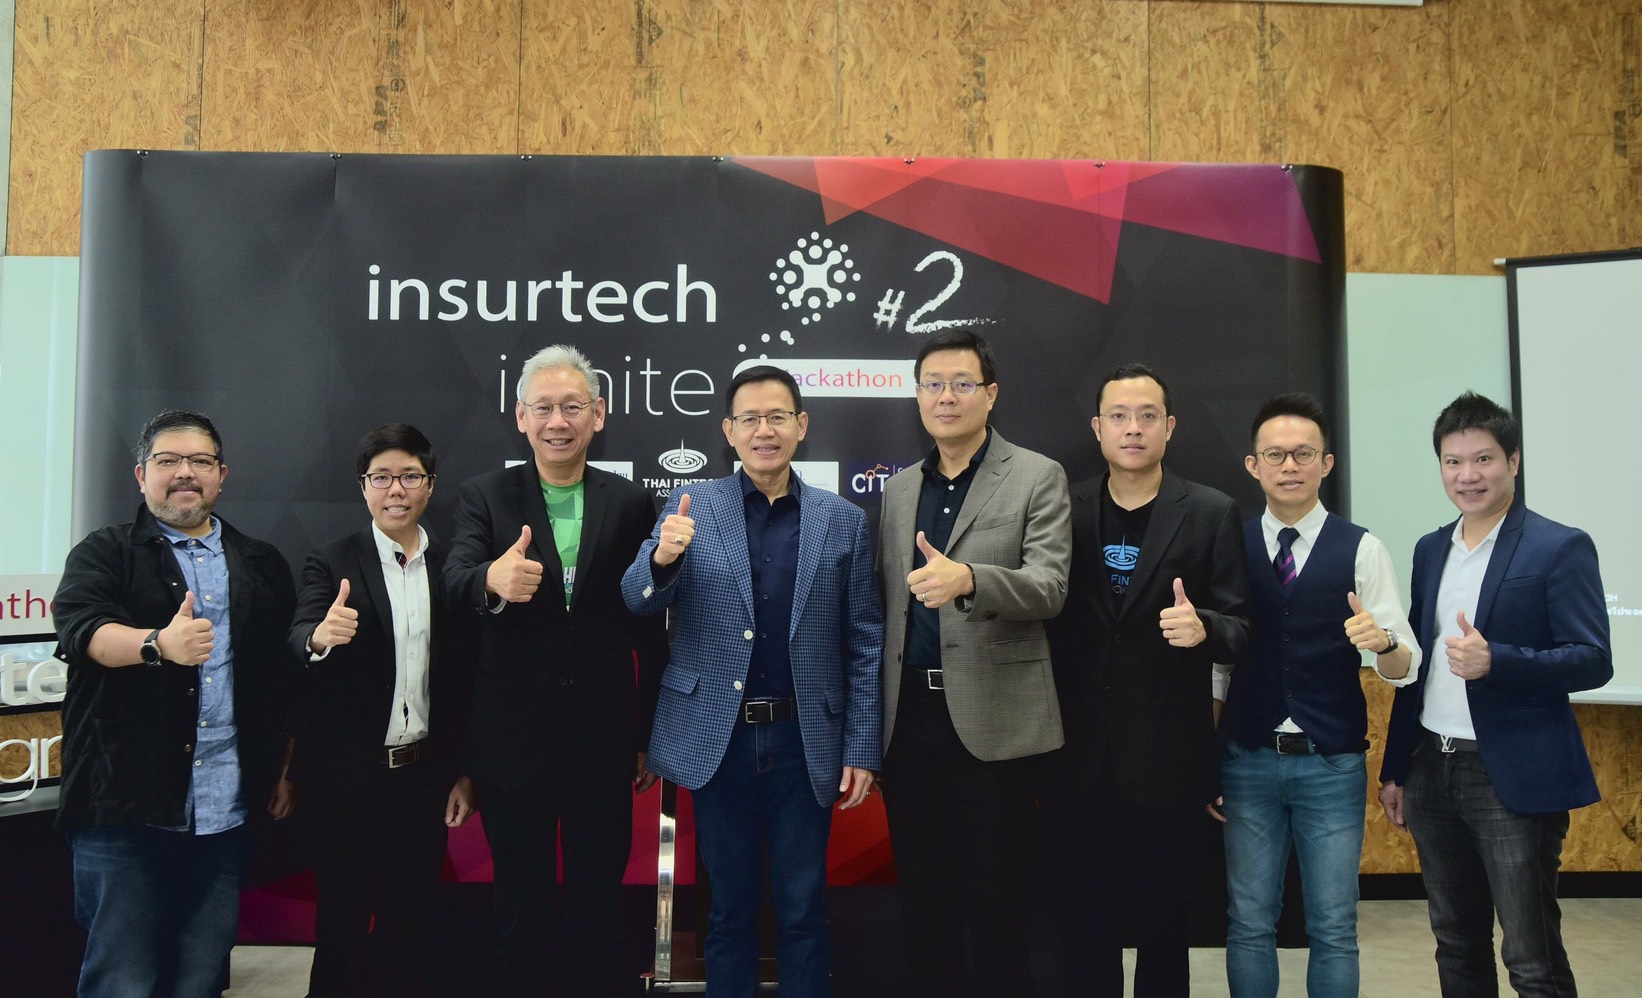 สมาคมประกันวินาศภัยไทย และพันธมิตร ร่วมมือสร้าง Insurtech Startup หน้าใหม่